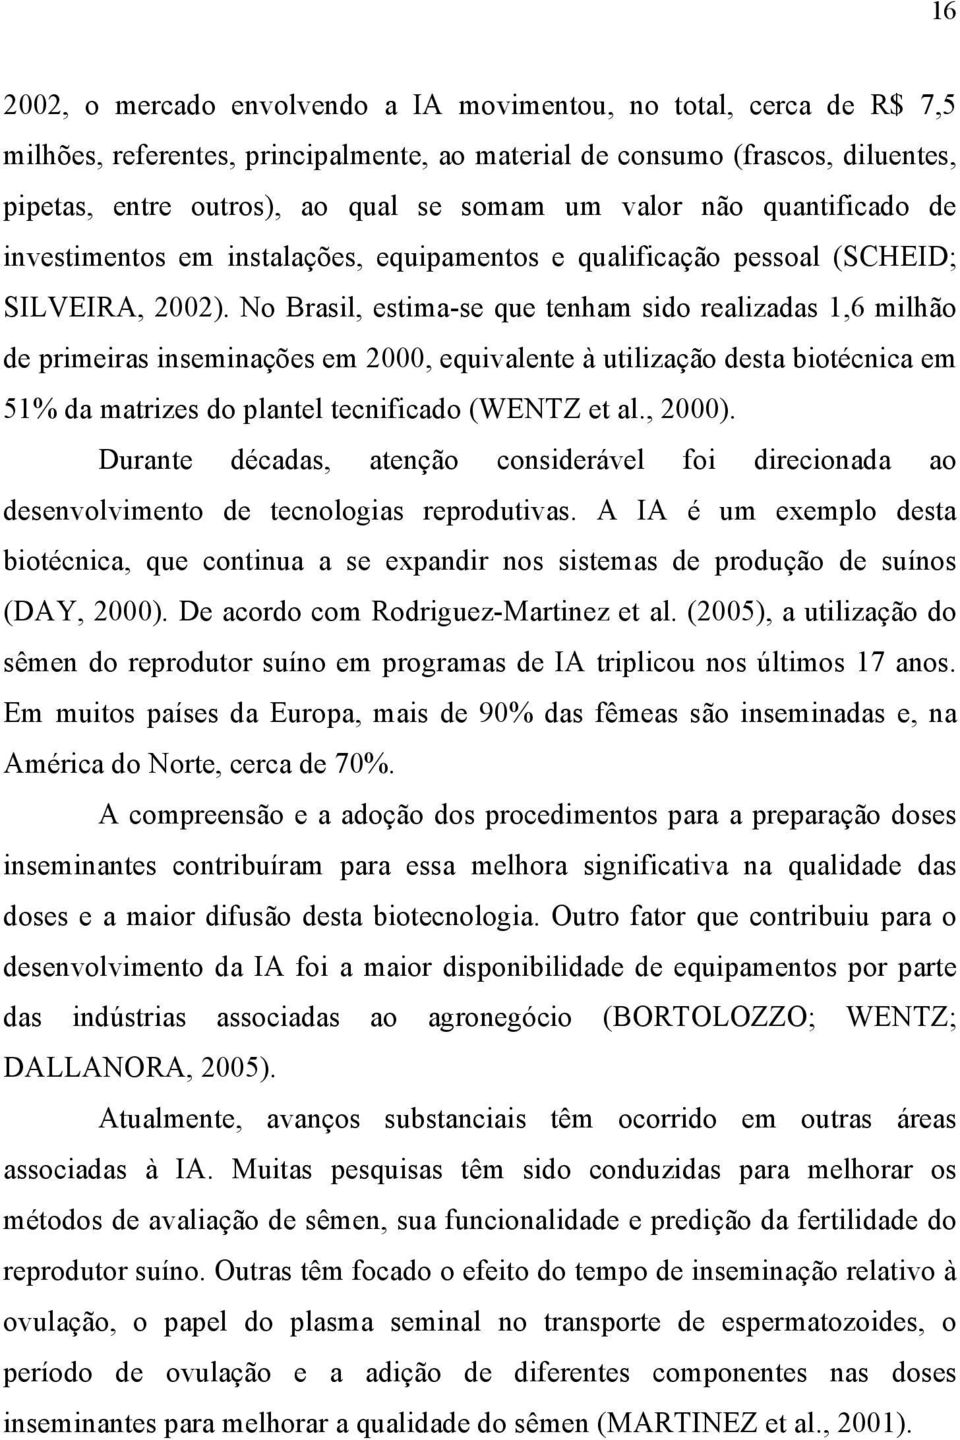 No Brasil, estima-se que tenham sido realizadas 1,6 milhão de primeiras inseminações em 2000, equivalente à utilização desta biotécnica em 51% da matrizes do plantel tecnificado (WENTZ et al., 2000).